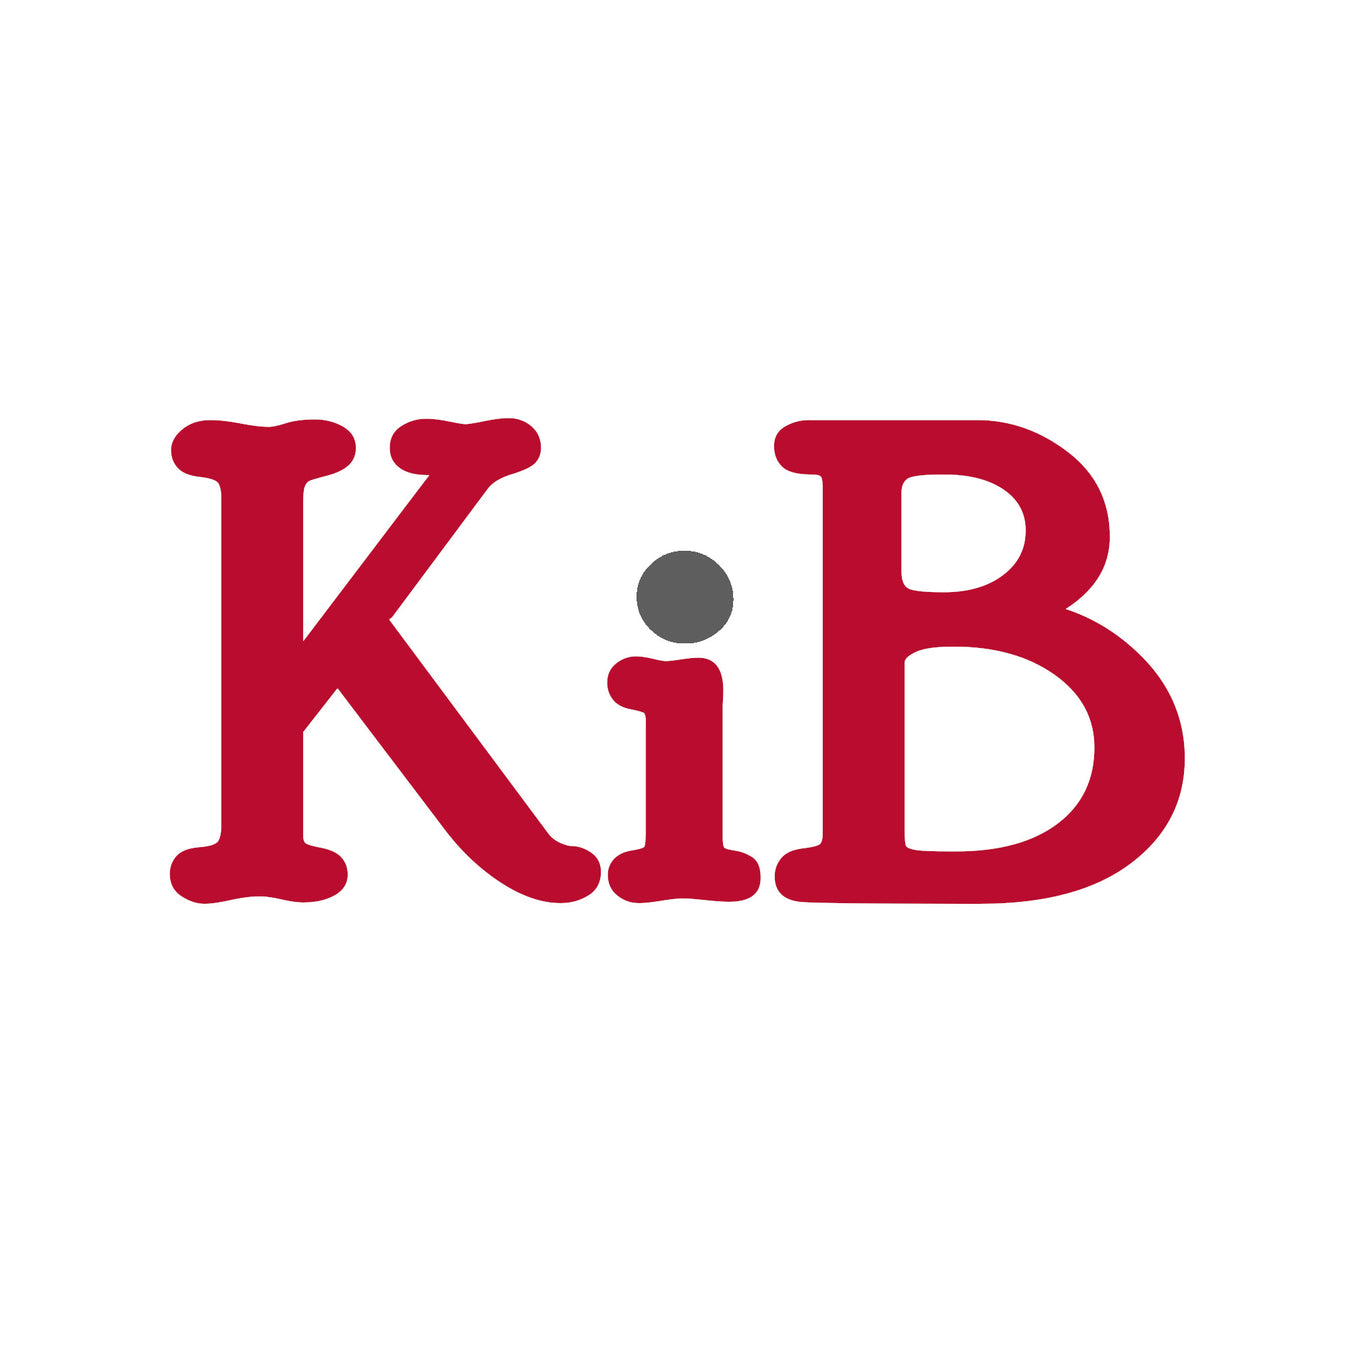 KiB Healthcare Limited